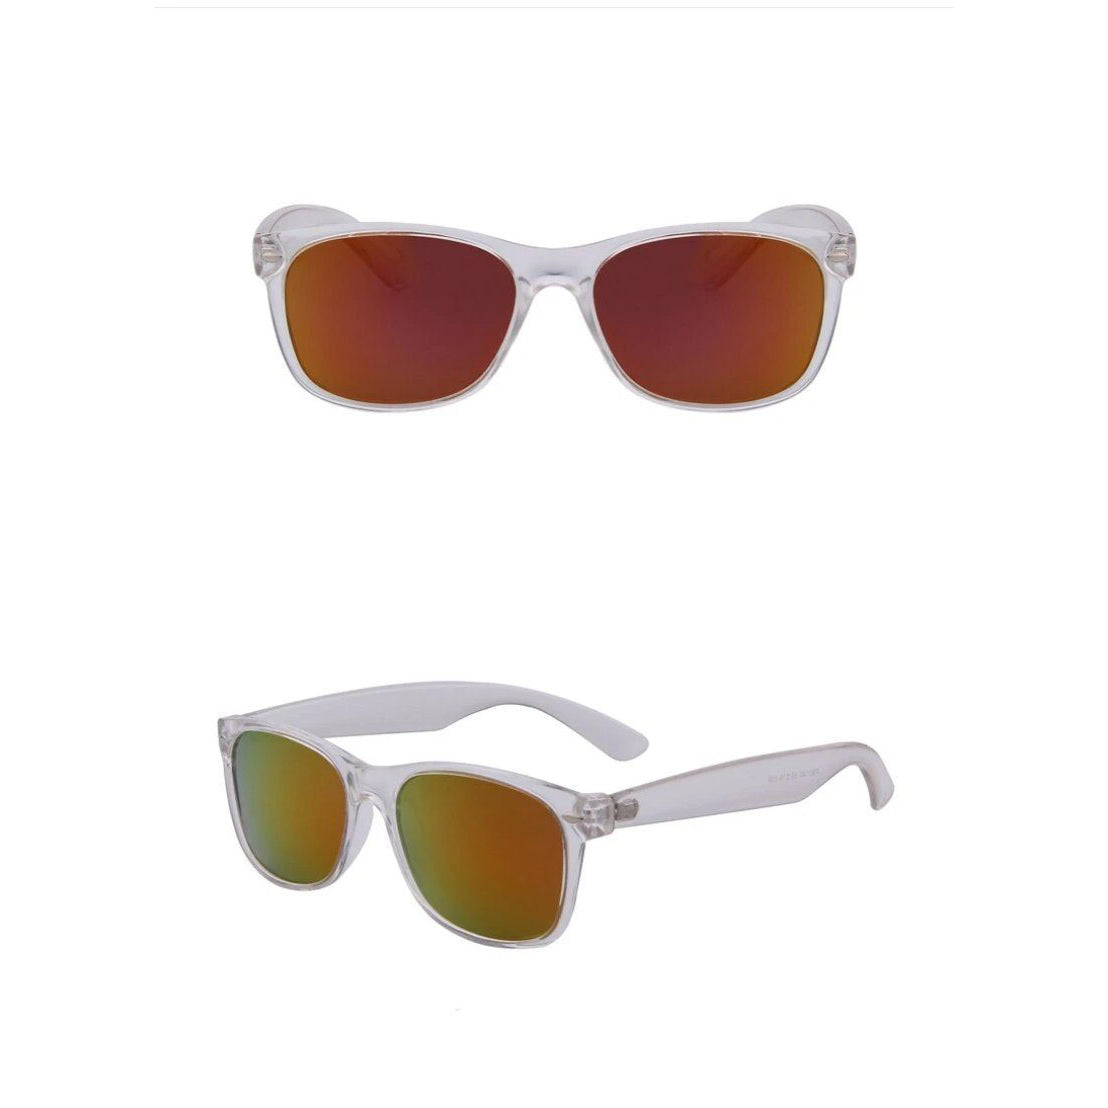 Classic Retro Polarized Sunglasses / UV400 Protection Rivet Shades - HARD'N'HEAVY